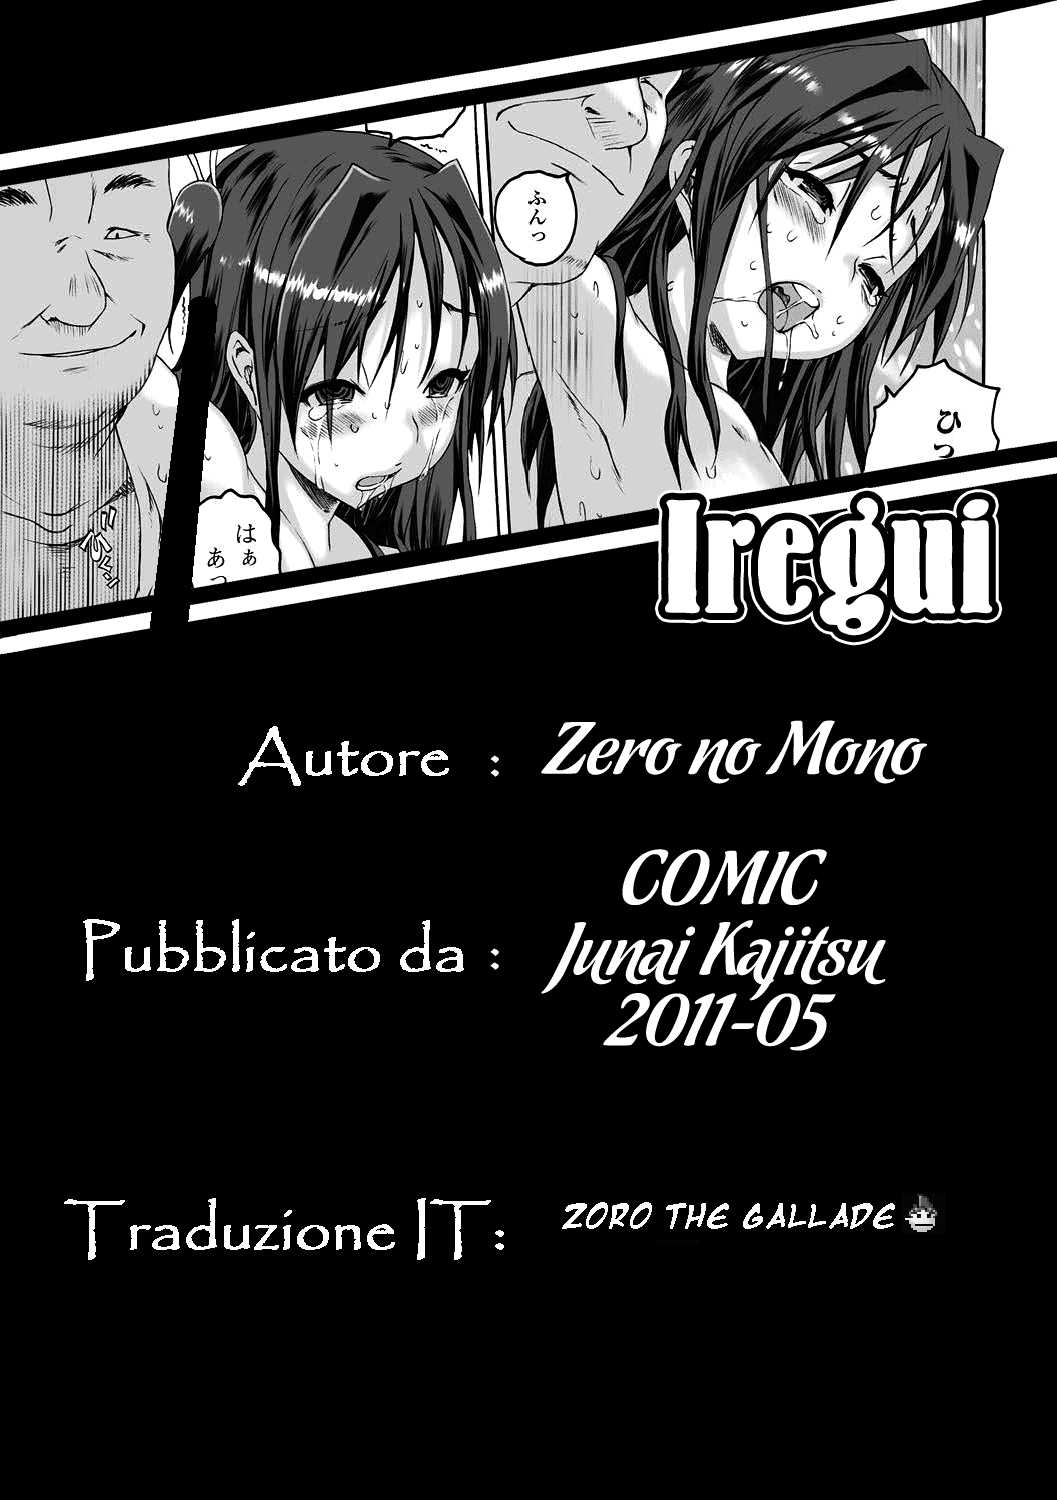 [Zero no Mono] Iregui (COMIC Junai Kajitsu 2011-05) (Italian) 